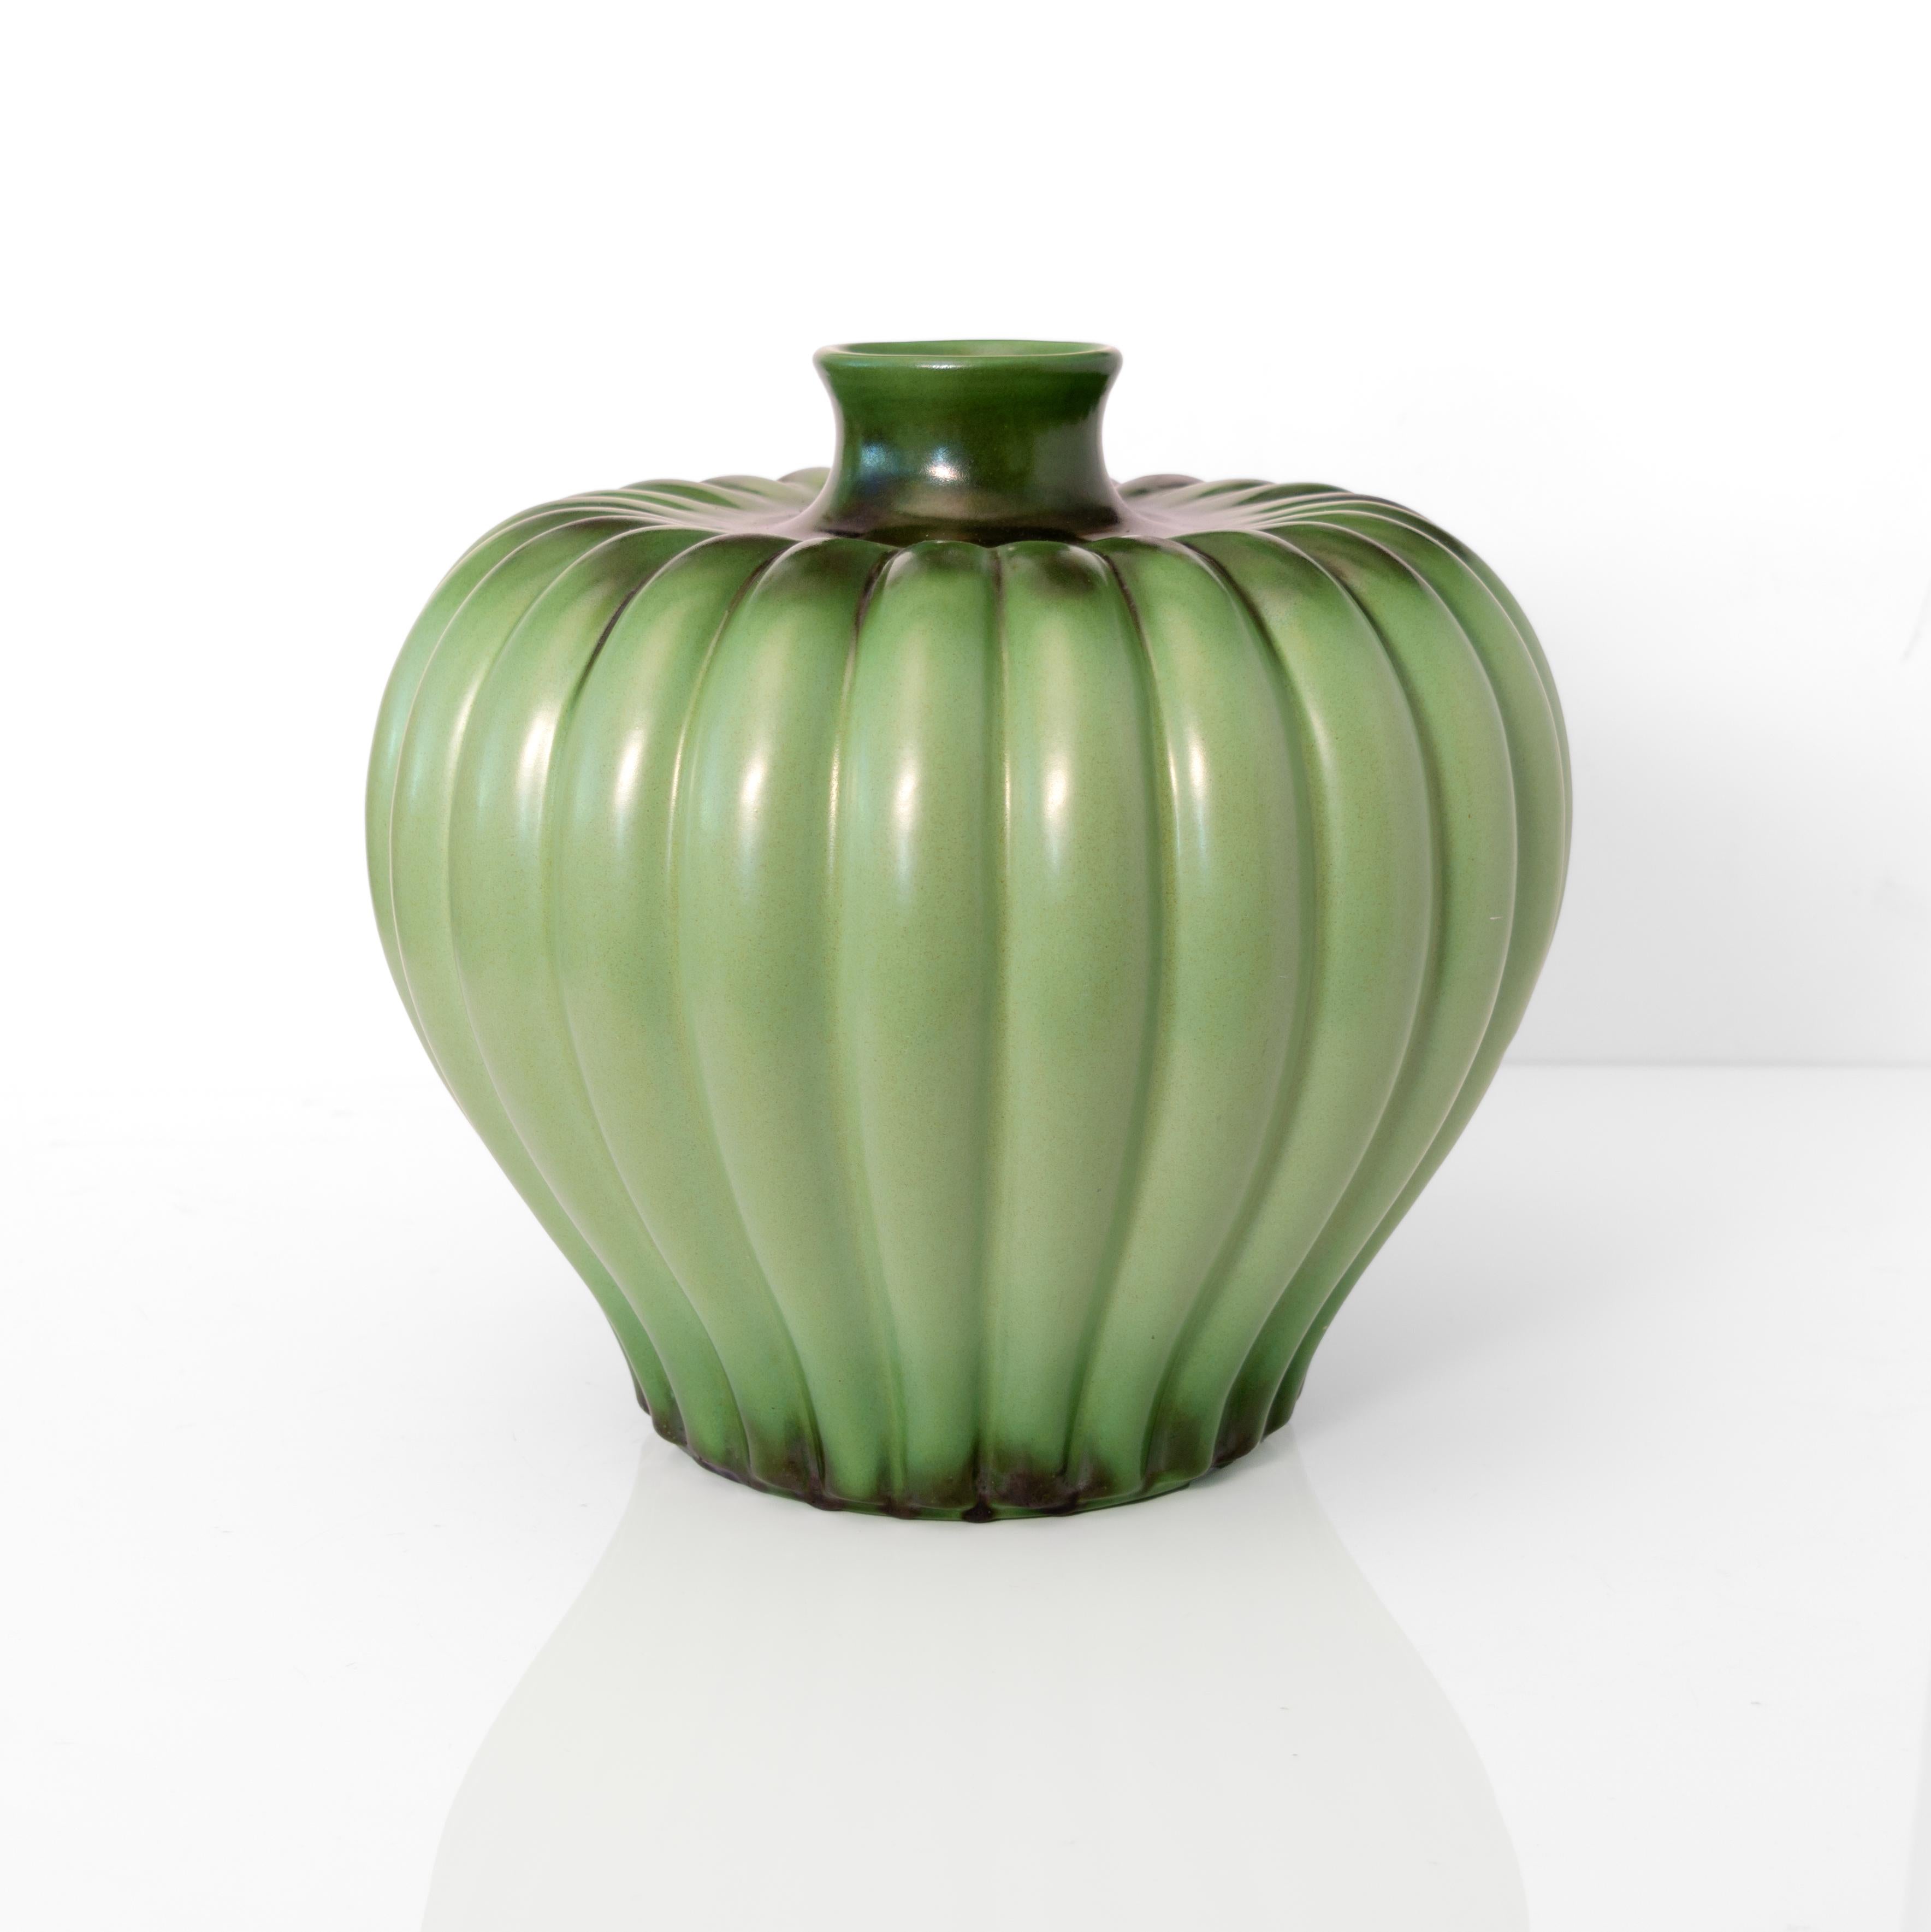 Große Vase mit geripptem Korpus des Künstlers Ewald Dahlskog, glasiert mit grünem Apfel, geschaffen für Bo Fajans, Schweden um 1940. 

Höhe: 10,5